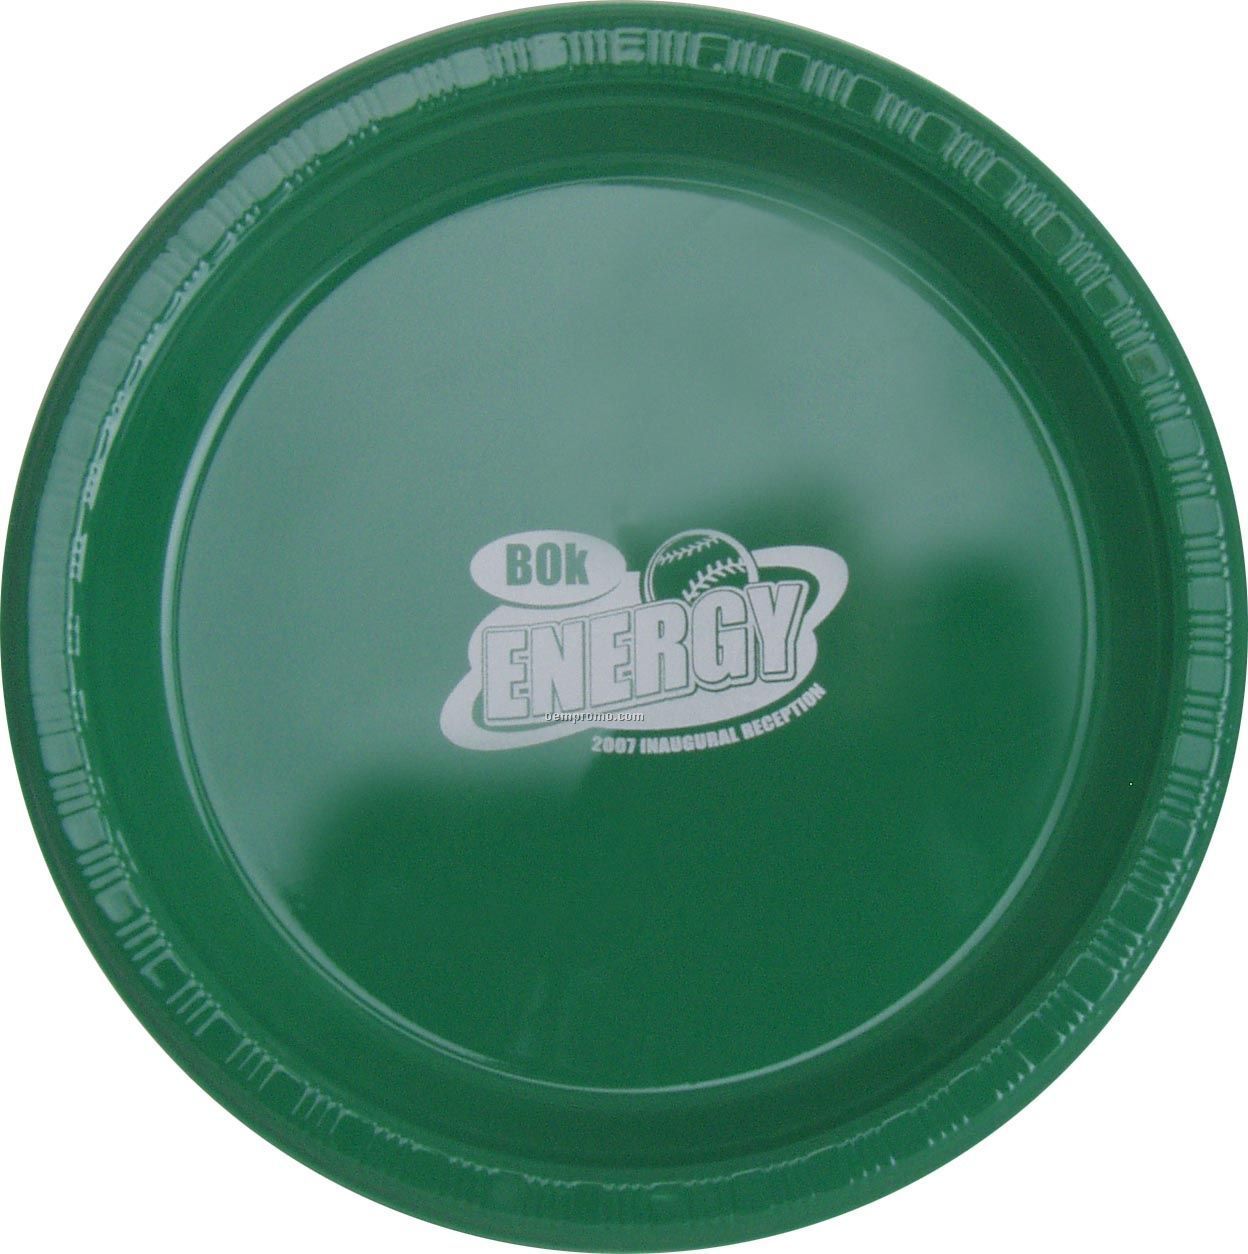 Colorware 9" Emerald Green Plastic Plate